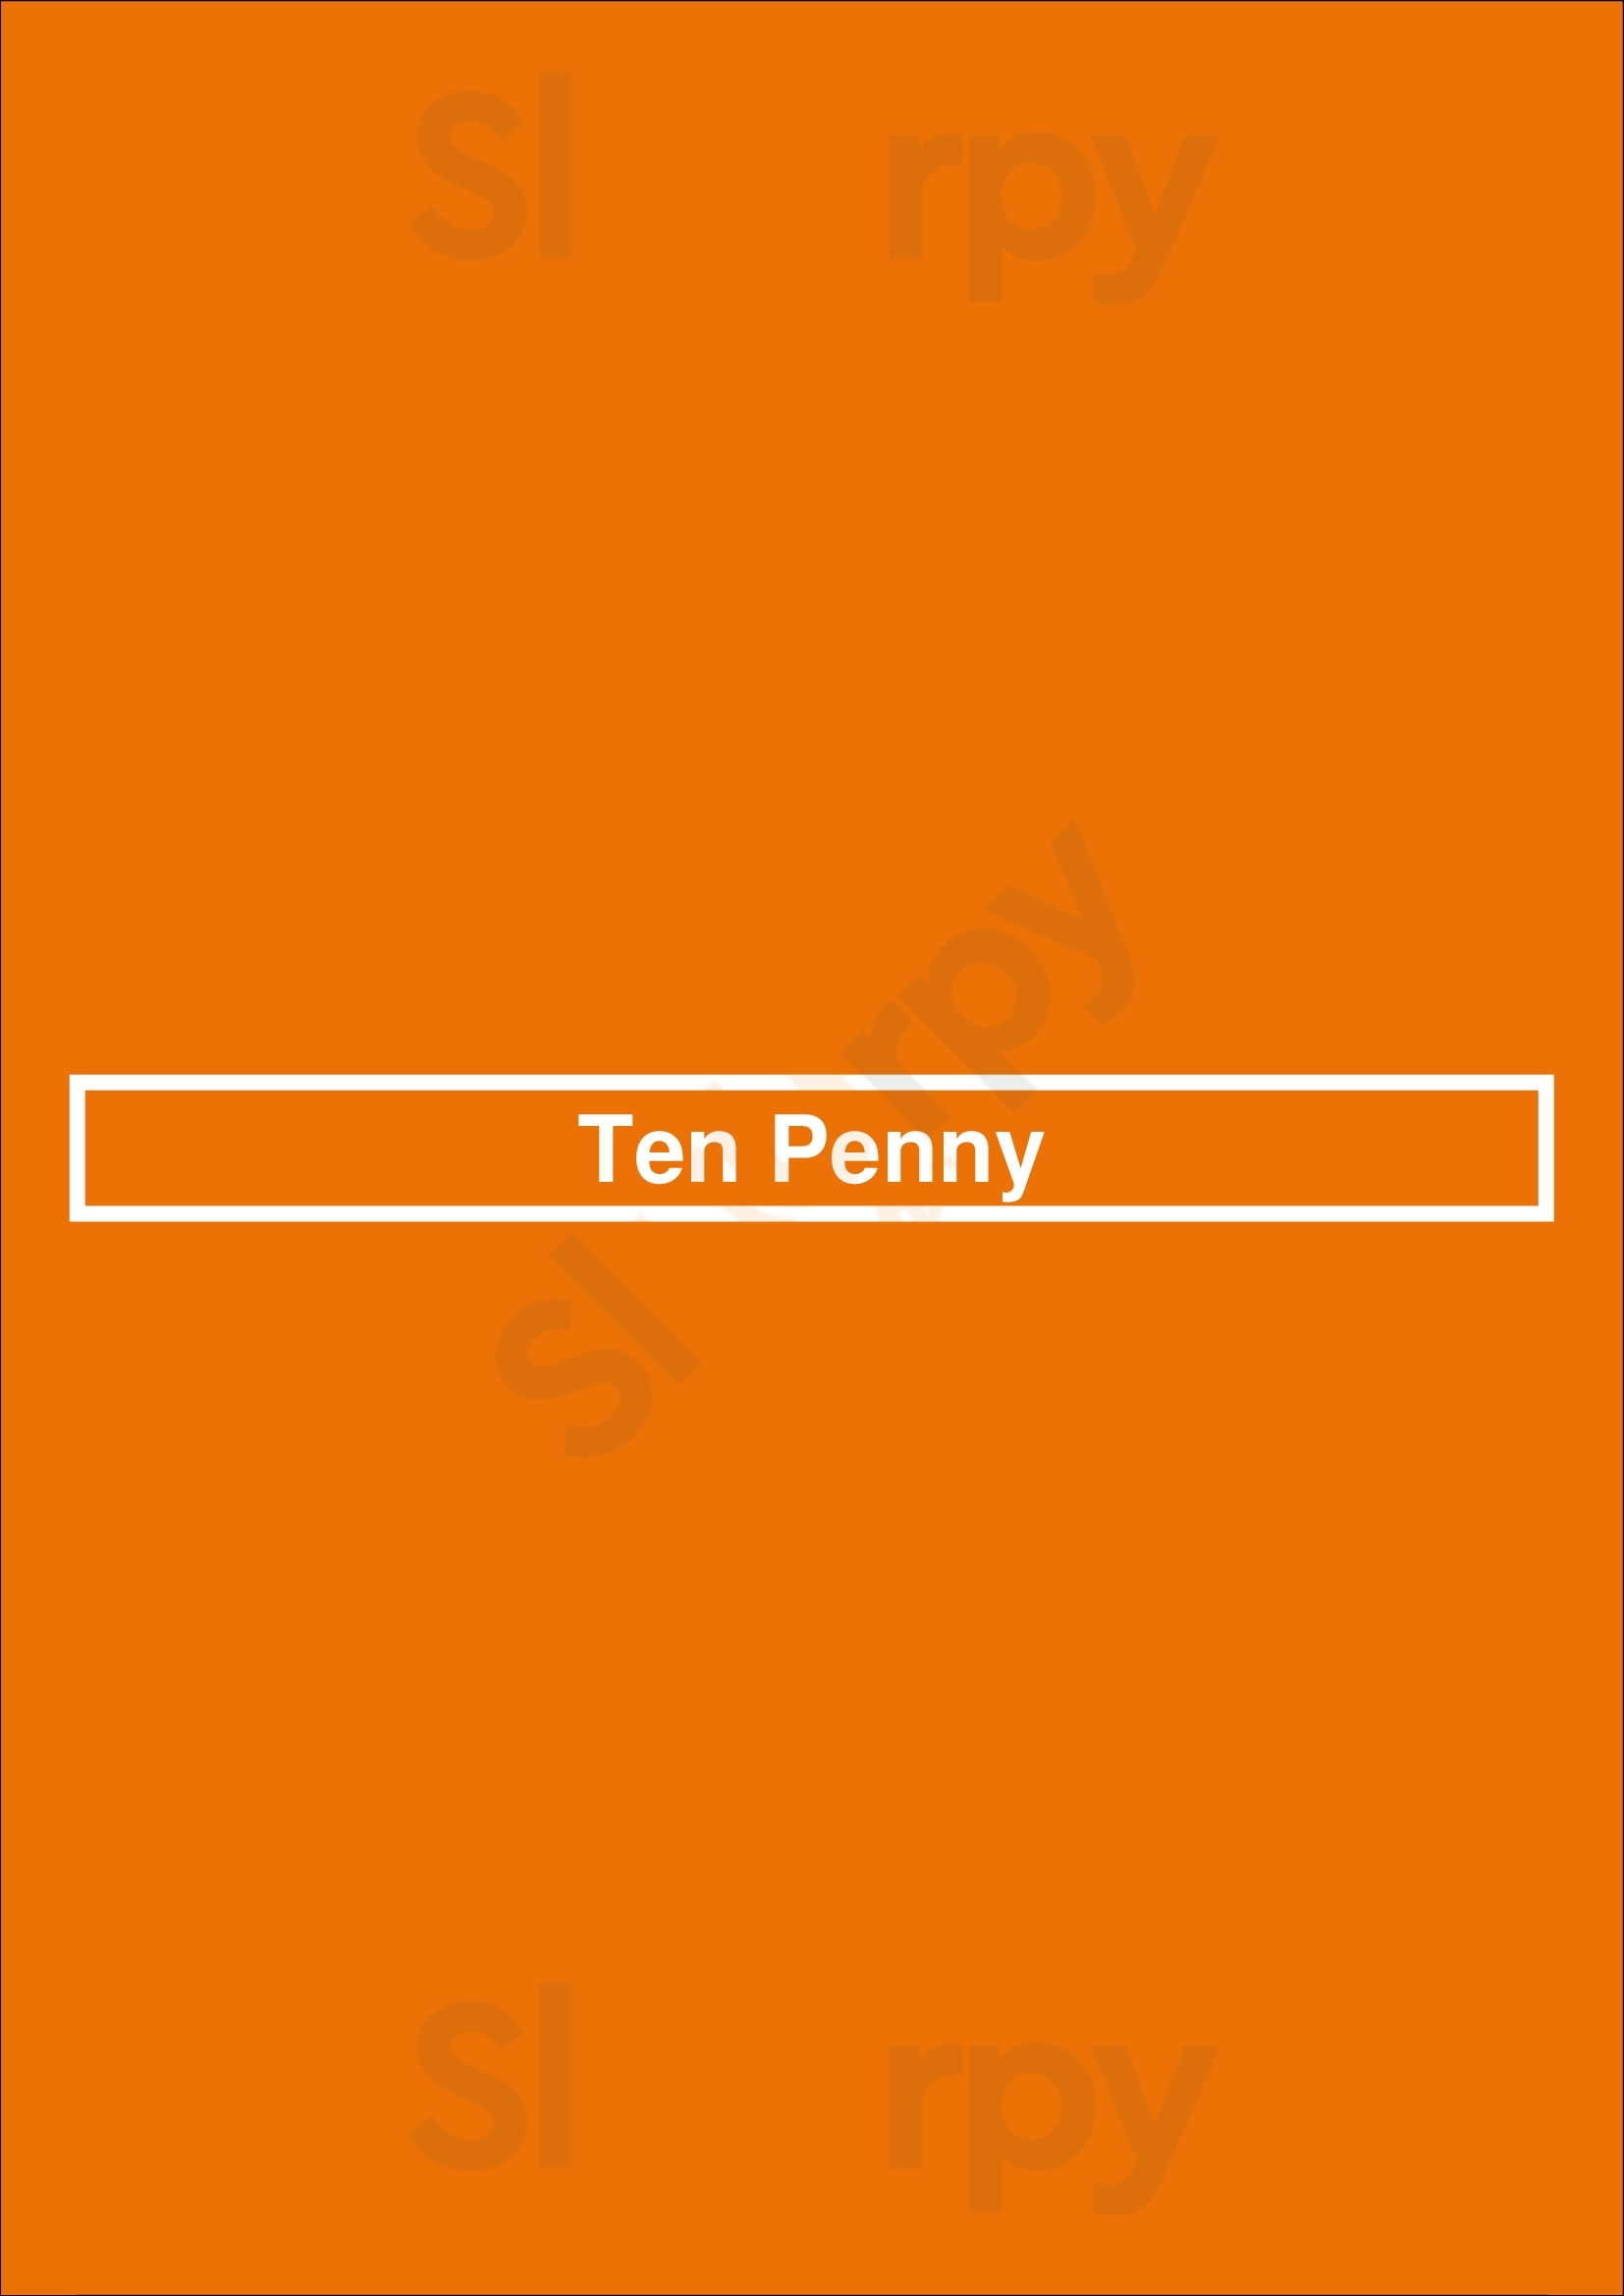 Ten Penny Pittsburgh Menu - 1